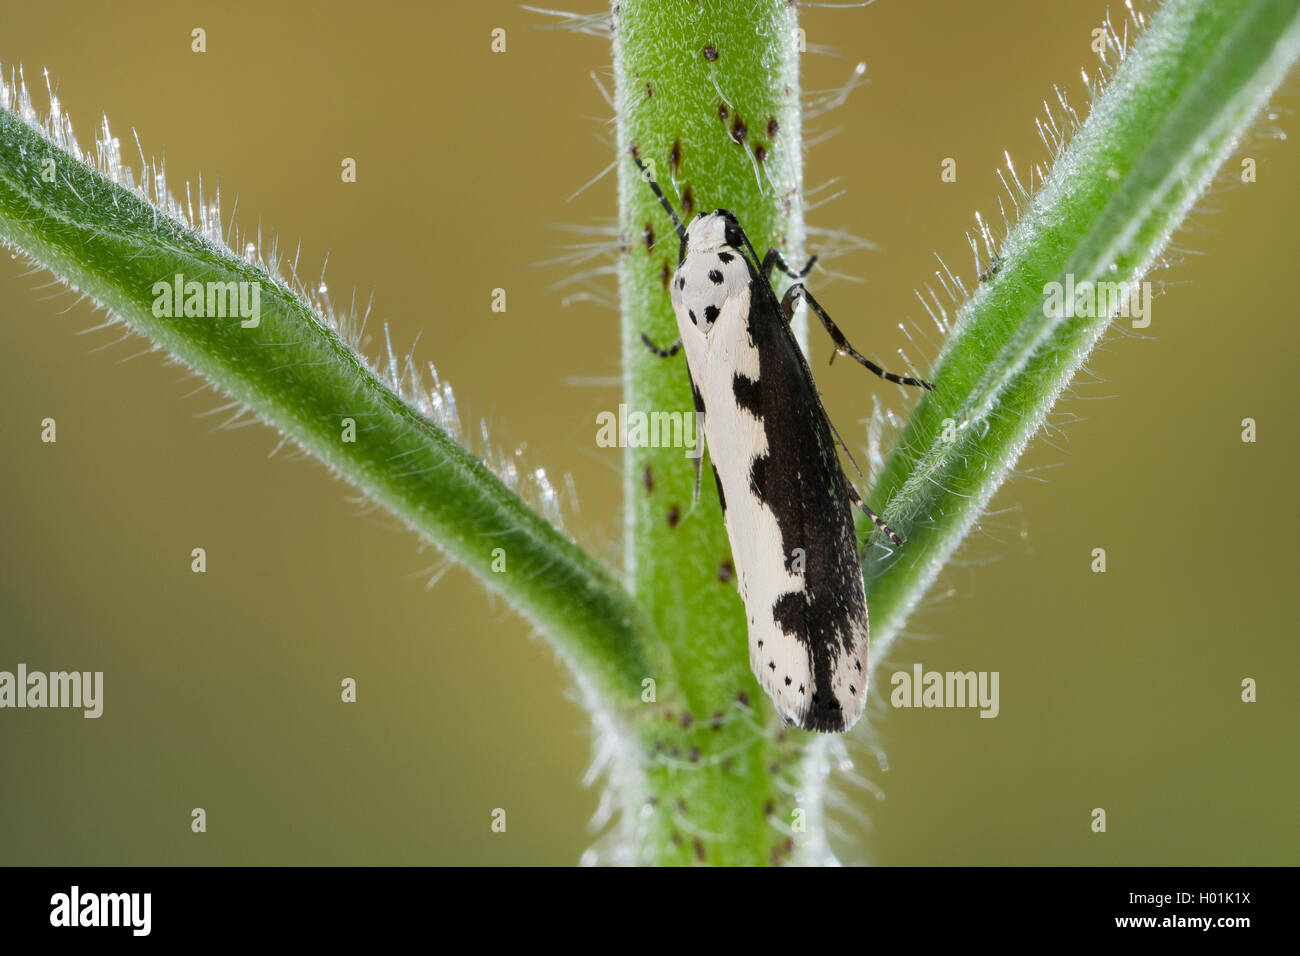 Der Viper, Vipern Bugloss Bugloss Motte Motte, grenzt grenzt Ermel, Echium Ermel (Ethmia bipunctella), auf einer Anlage, Deutschland Stockfoto